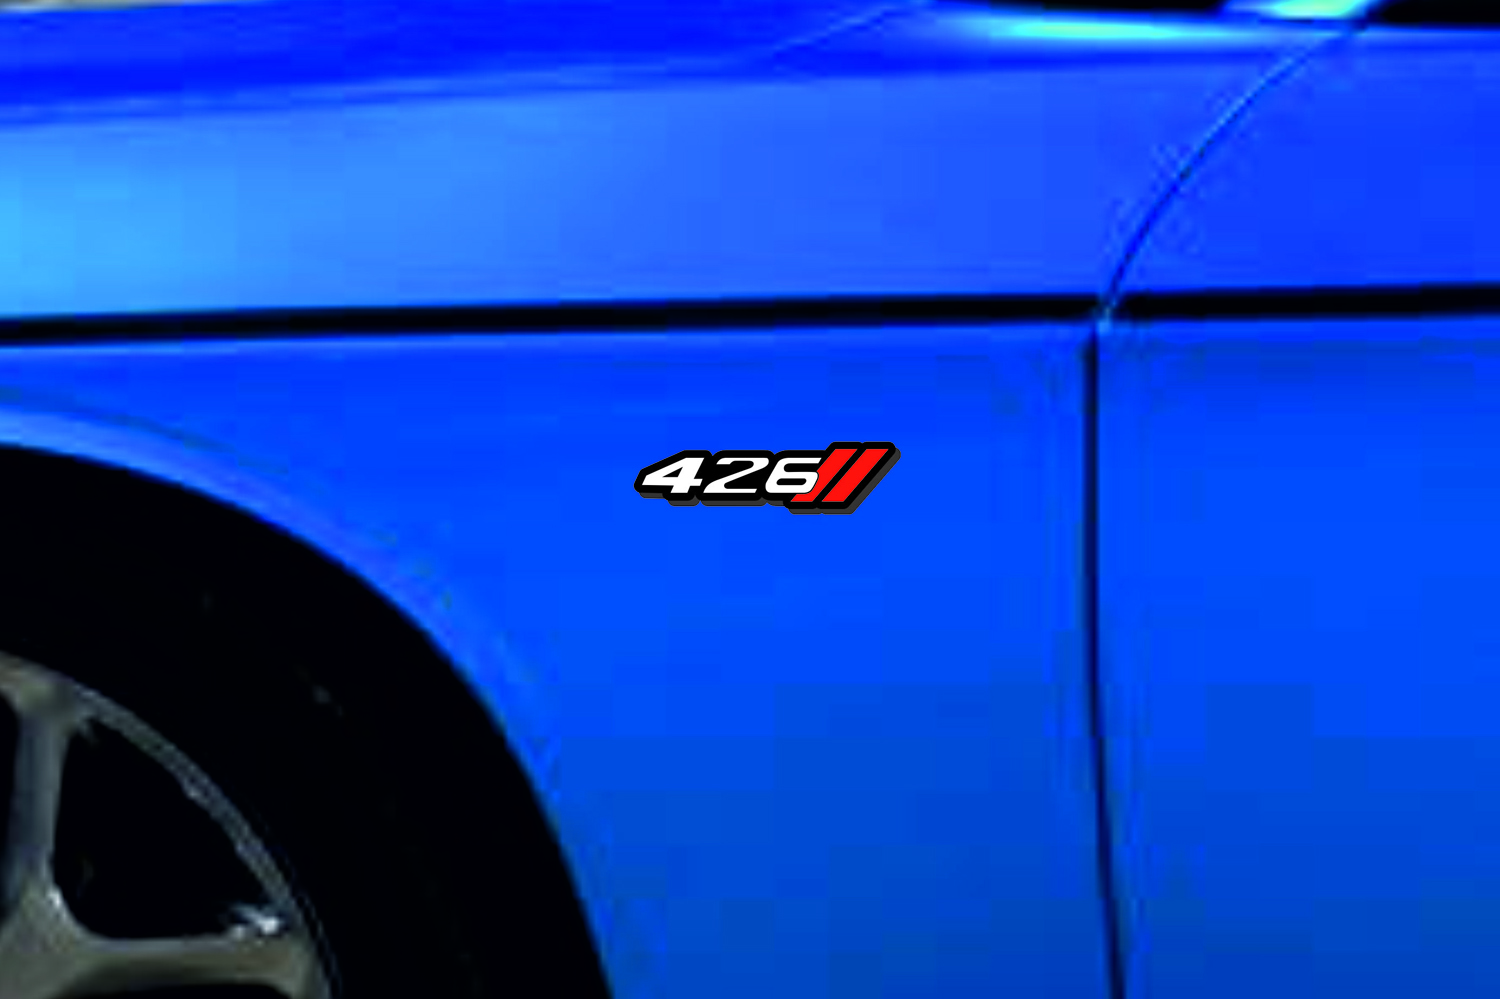 DODGE emblem for fenders with 426 + Dodge logo